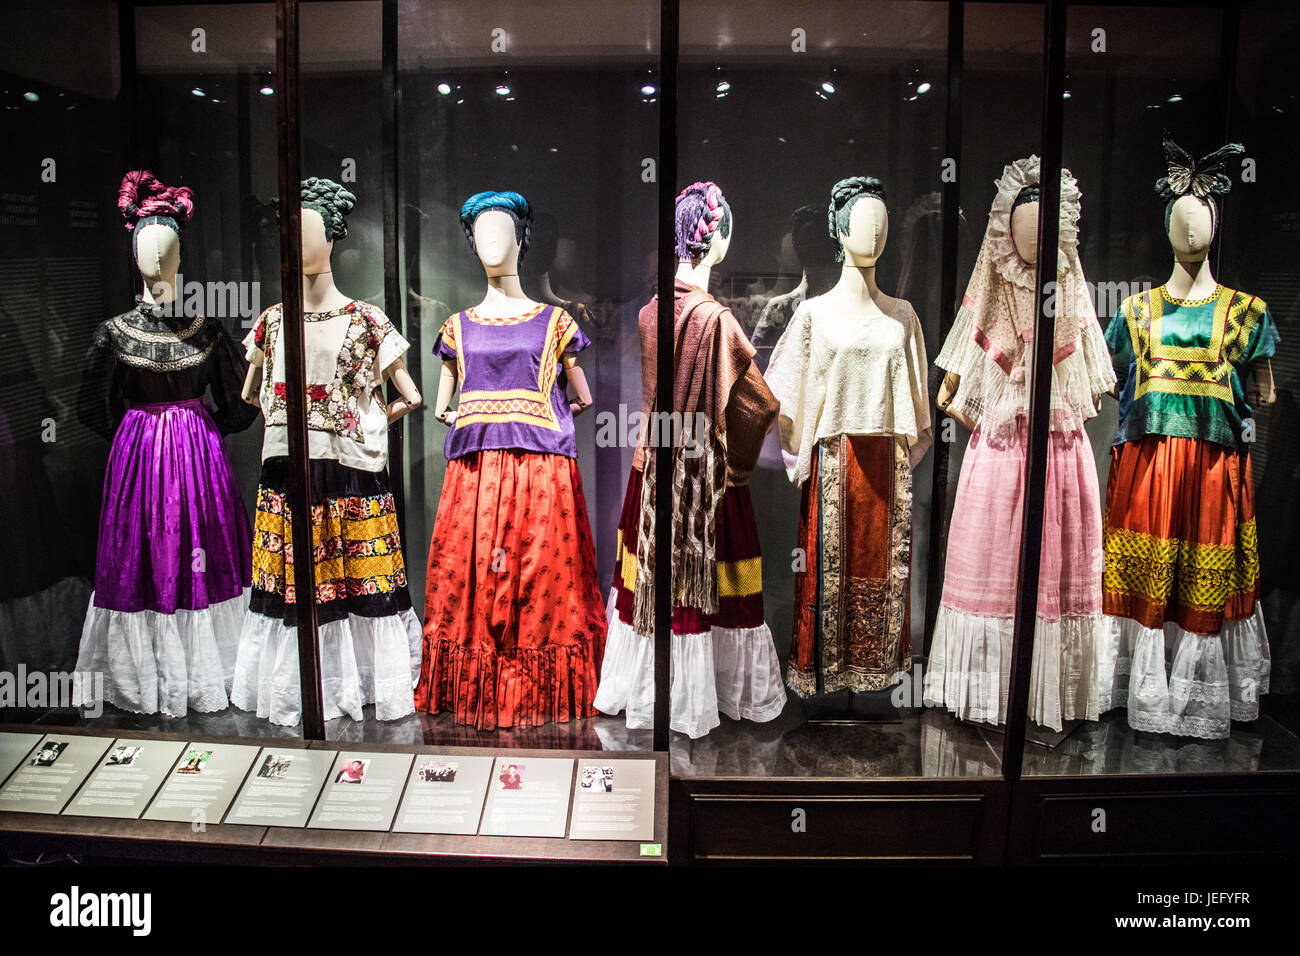 Frida Kahlo Clothes Exhibition